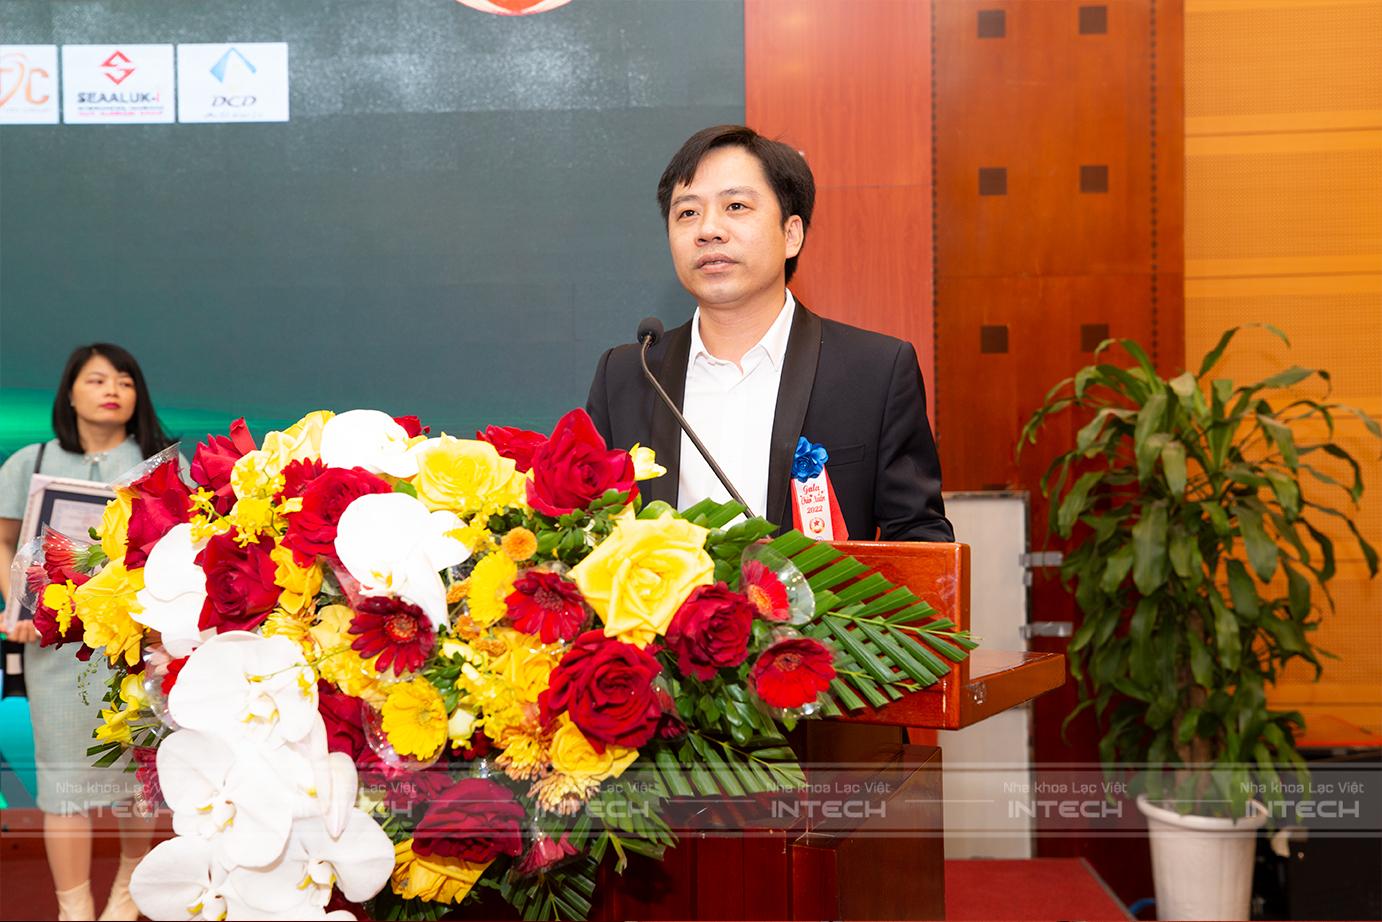 Nha khoa Lạc Việt Intech ngày càng phát triển, nâng cao chất lượng dịch vụ